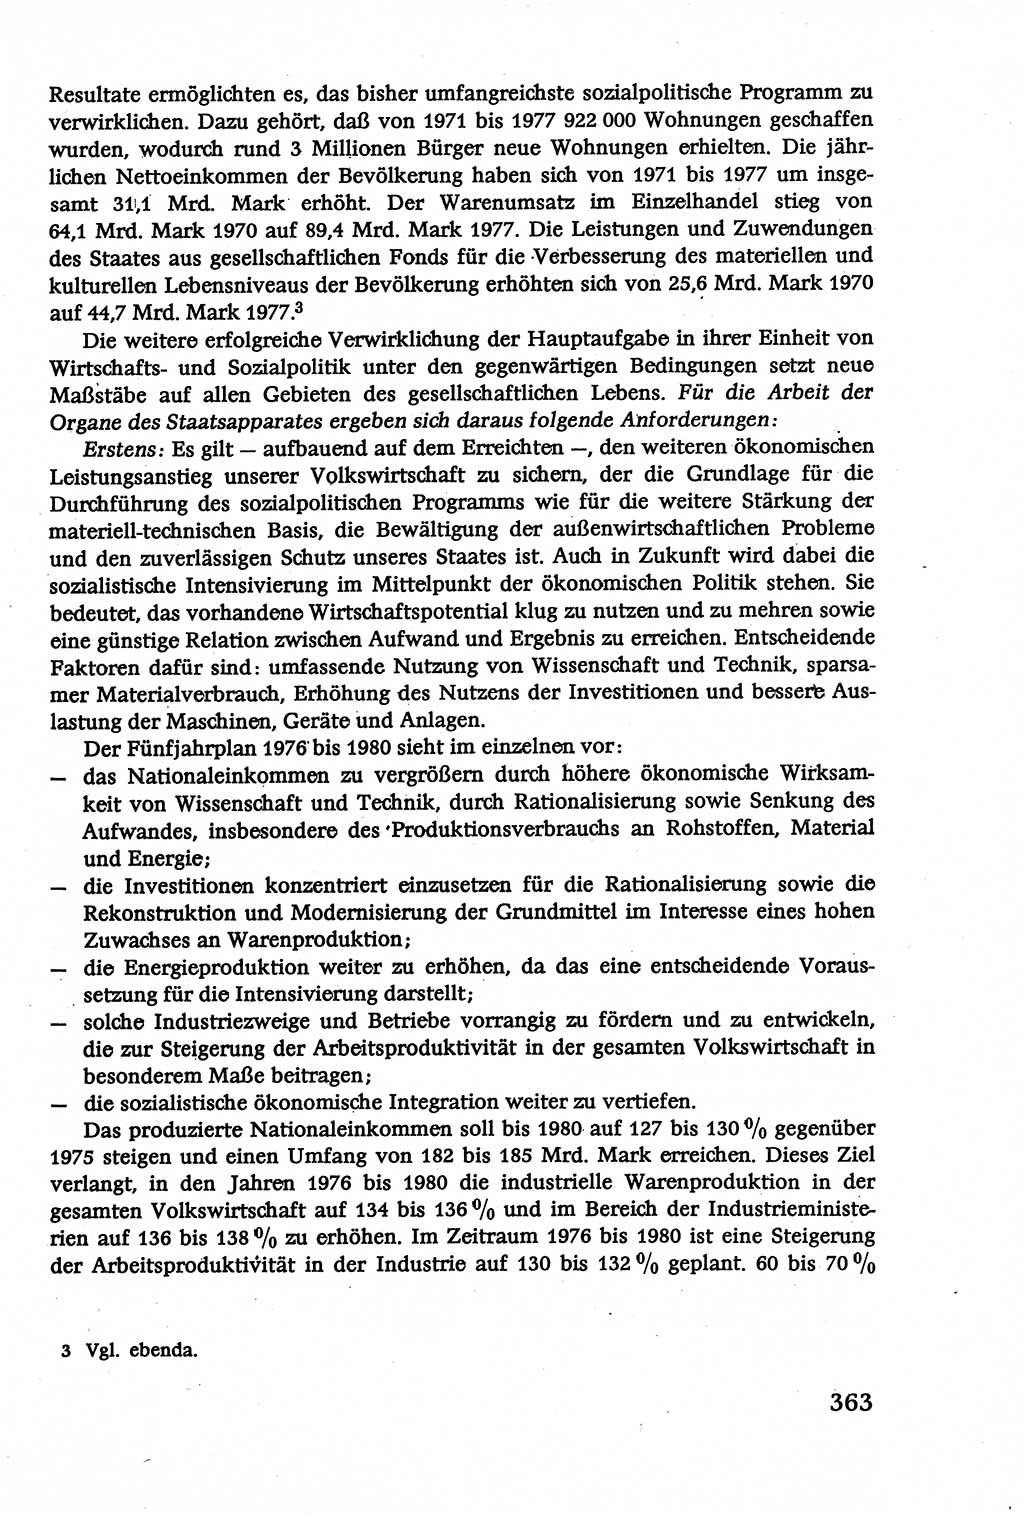 Verwaltungsrecht [Deutsche Demokratische Republik (DDR)], Lehrbuch 1979, Seite 363 (Verw.-R. DDR Lb. 1979, S. 363)